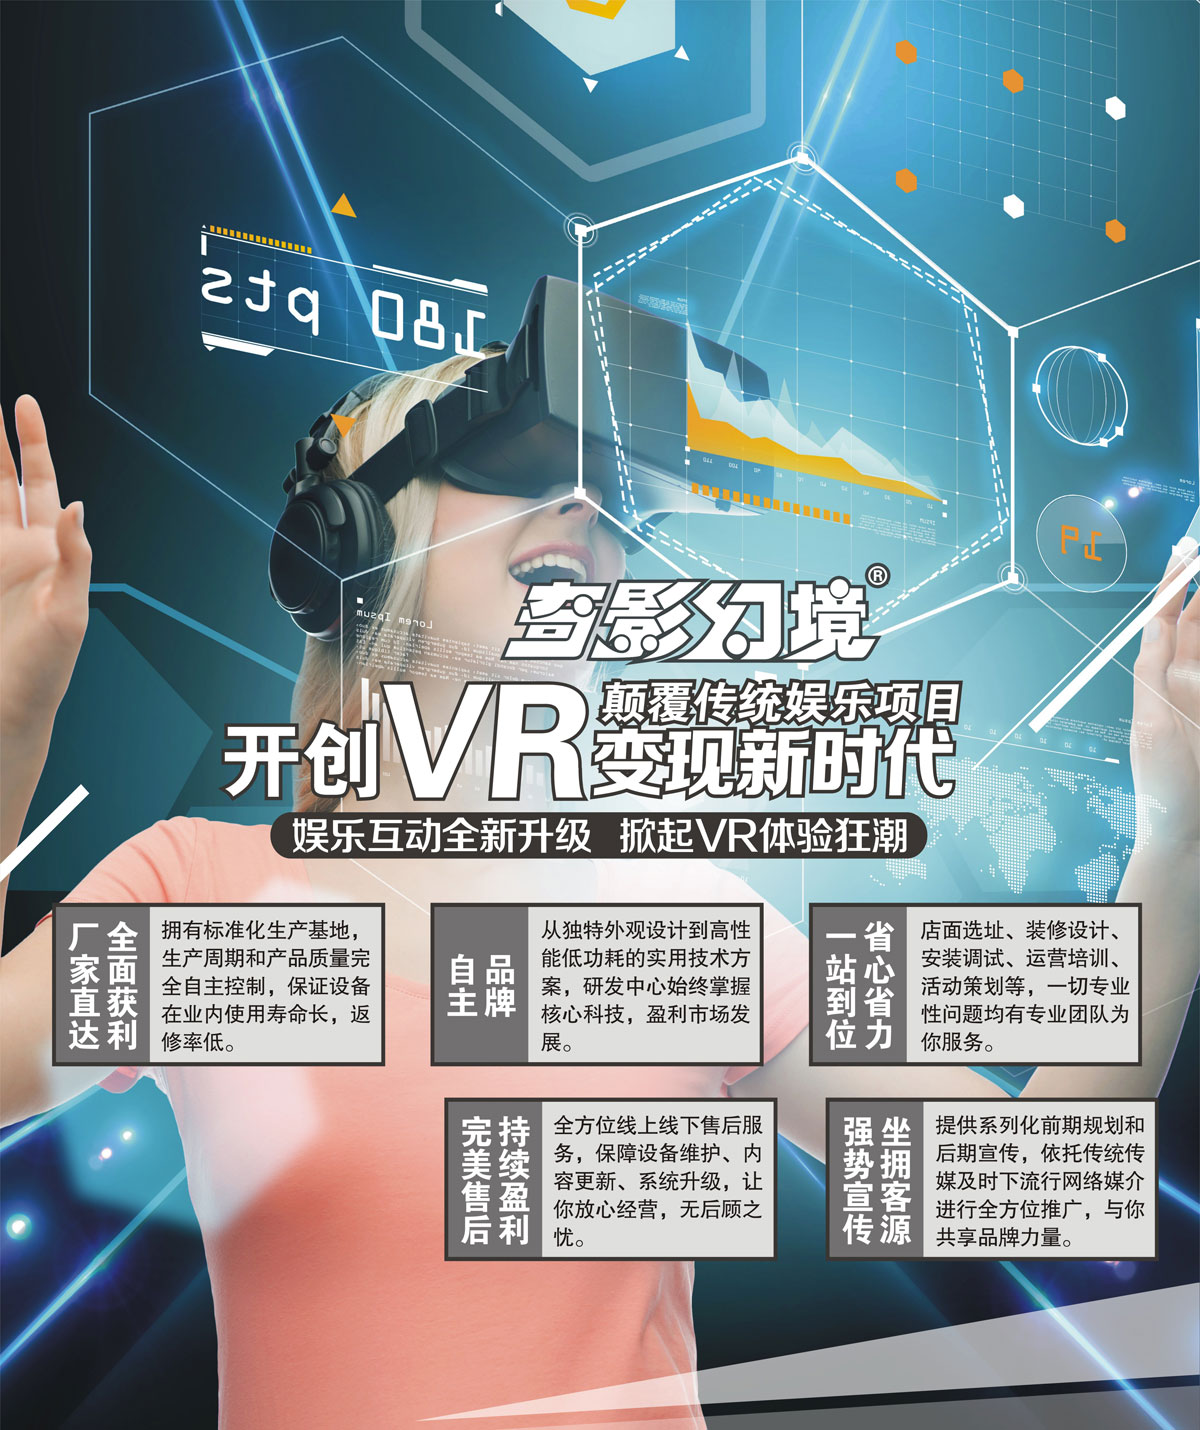 安全体验开创VR变现新时代颠覆传统娱乐项目.jpg